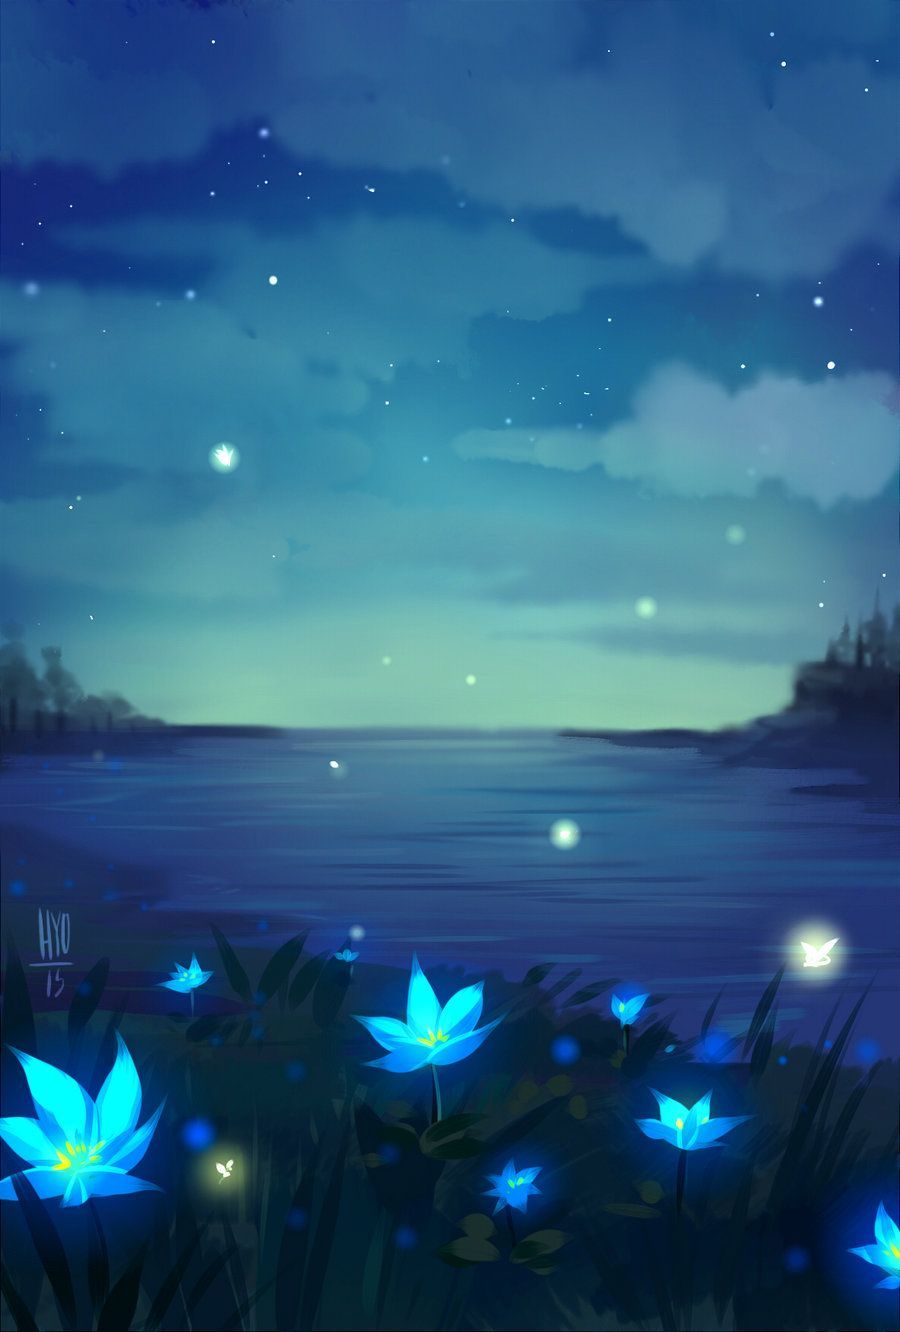 Hoa anime xanh là biểu tượng của sự tươi mới và sự sống. Màu xanh của chúng mang lại cảm giác mát mẻ, sảng khoái, giống như bạn đang ngắm nhìn thanh xuân đầy thắm tình.